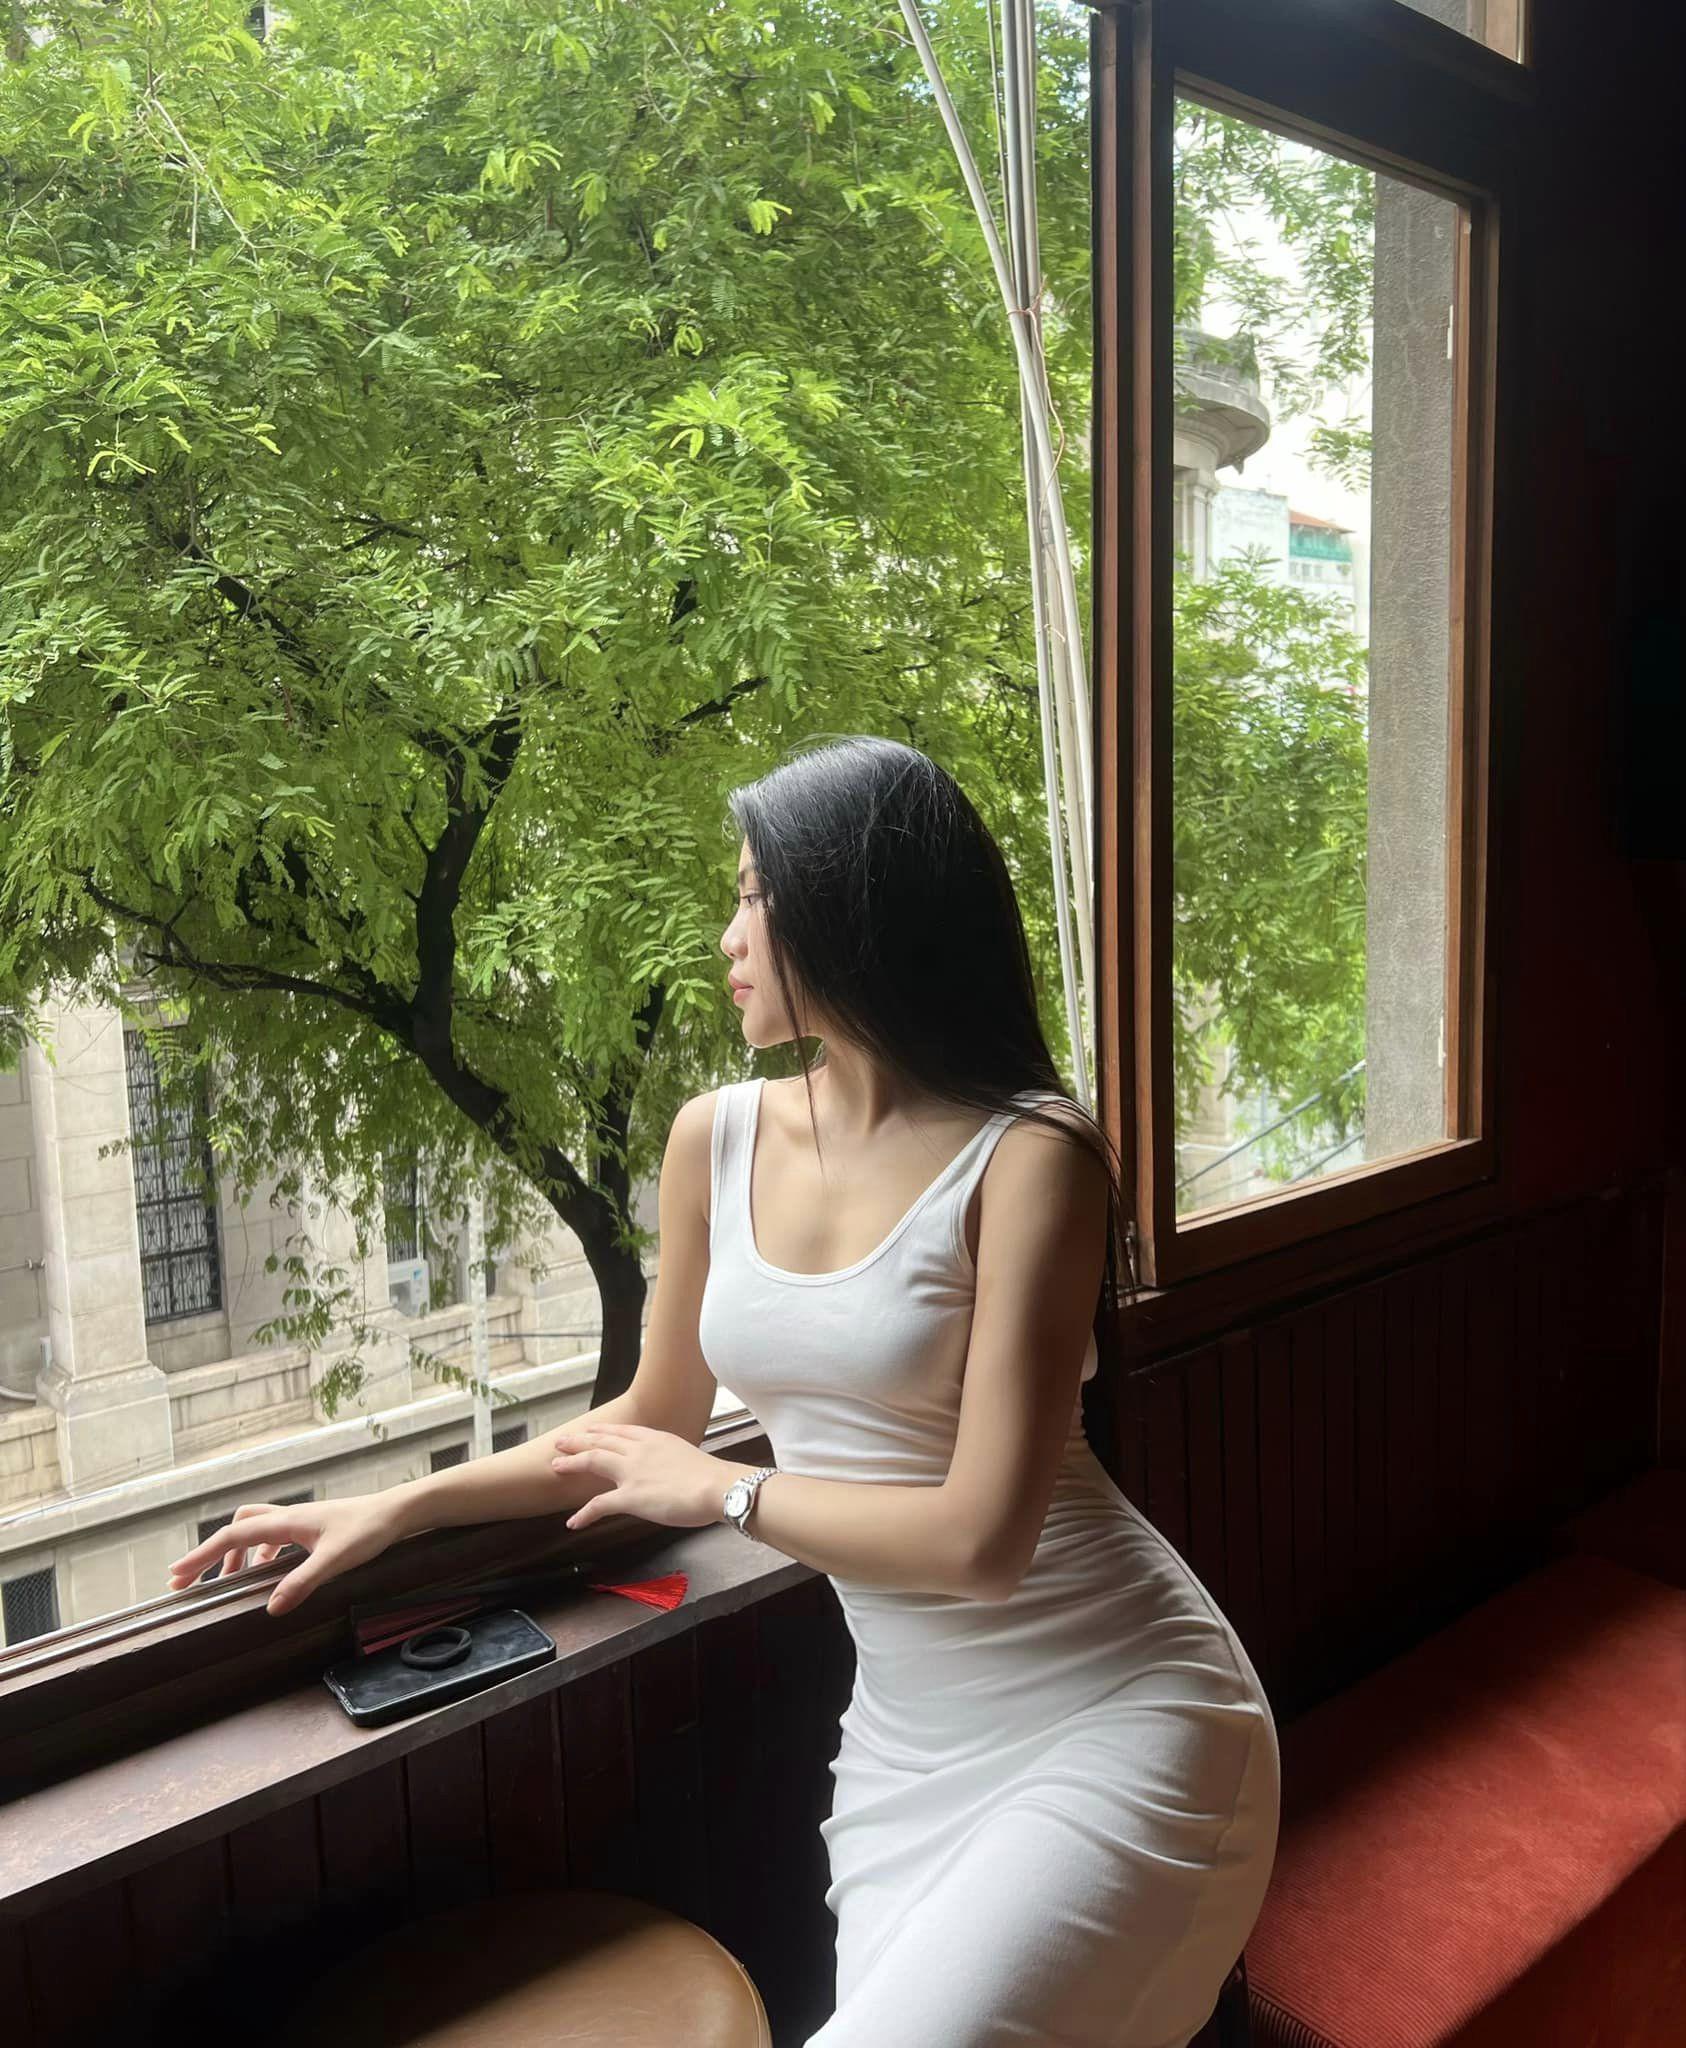 Chu Ánh từng đạt giải "Người đẹp Hình thể" nhờ có vóc dáng ấn tượng tại cuộc thi Miss Fitness Vietnam 2022.